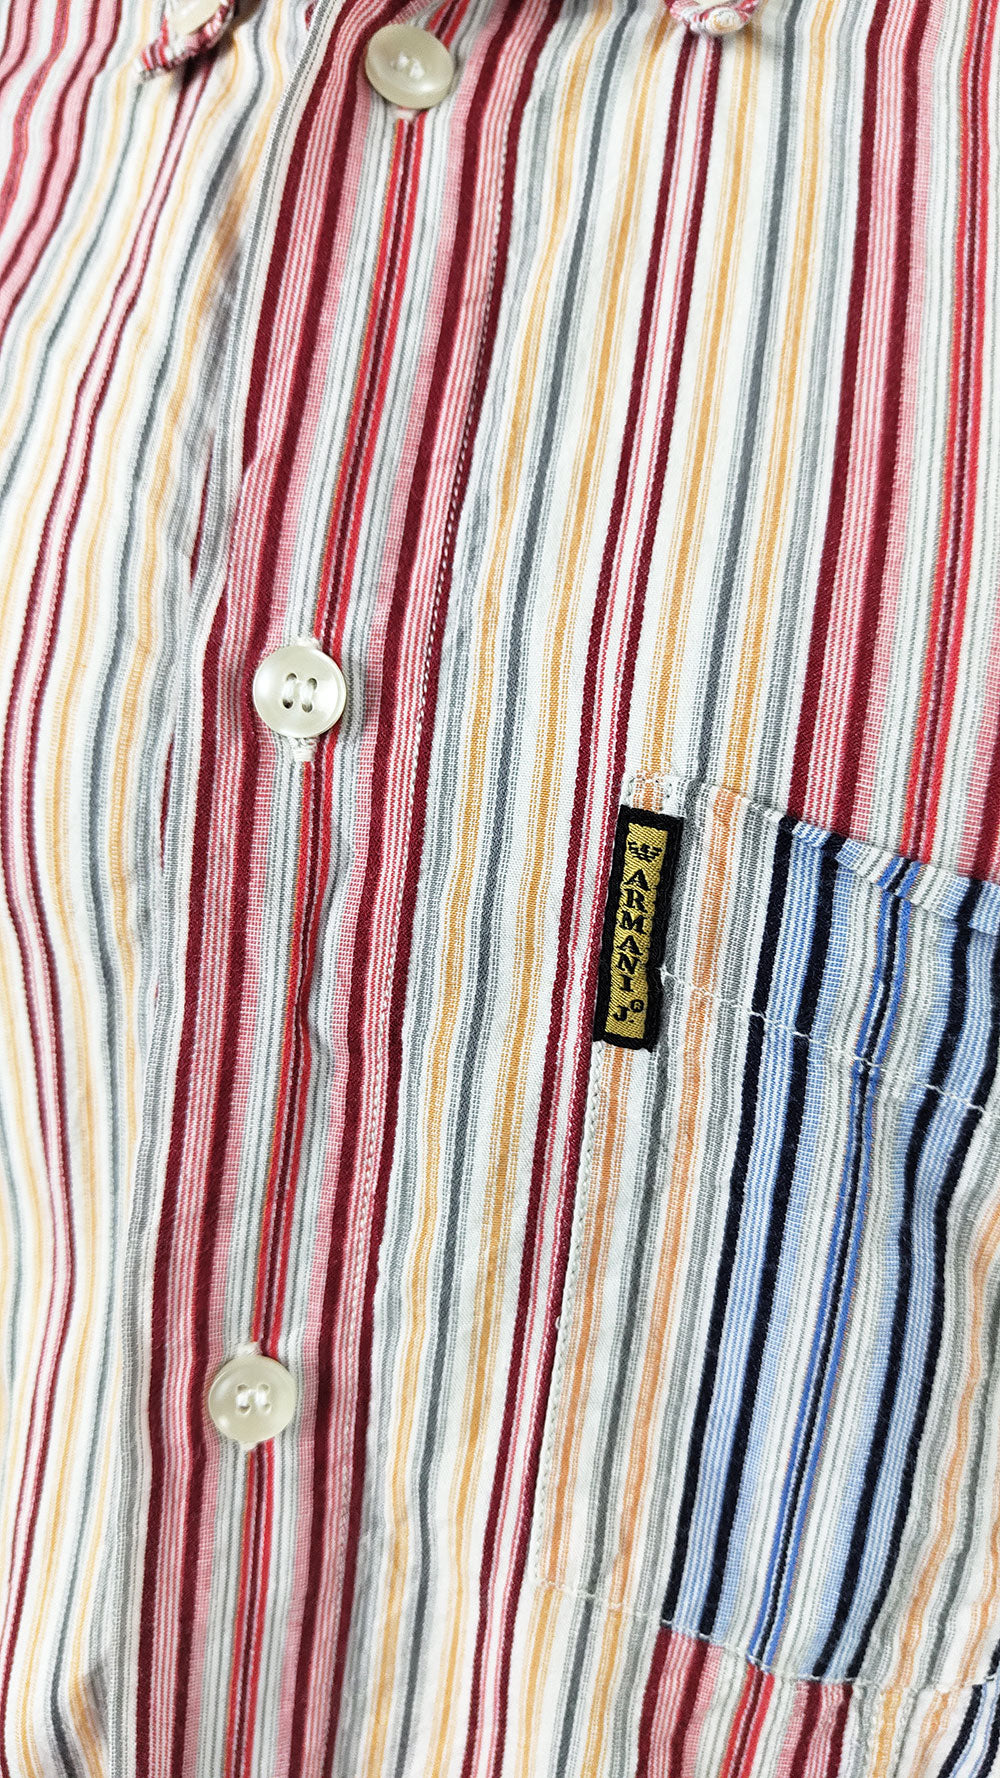 Armani Jeans Vintage Mens Indian Madras Cotton Shirt, 1990s